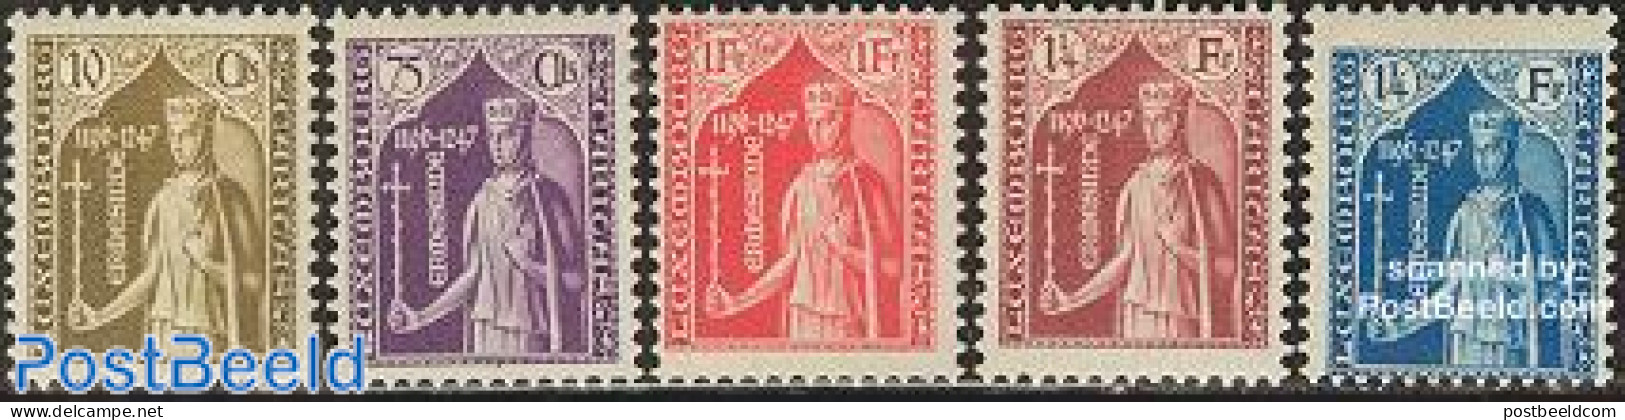 Luxemburg 1932 Child Welfare 5v, Unused (hinged) - Unused Stamps